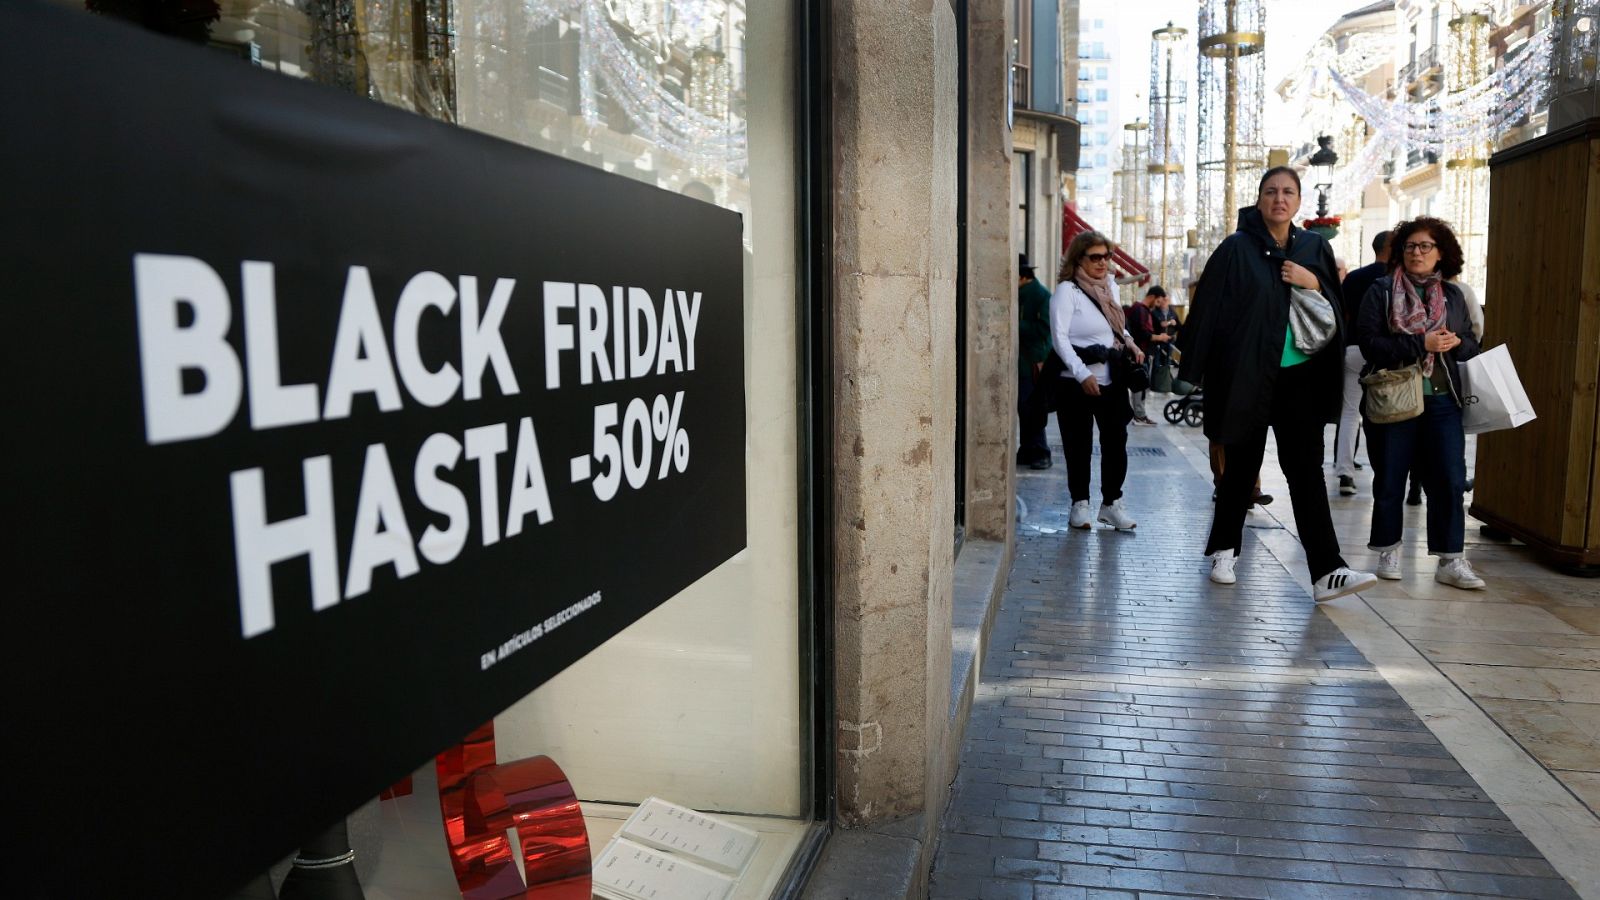 Casi la mitad de los españoles aprovechará para comprar este Black Friday